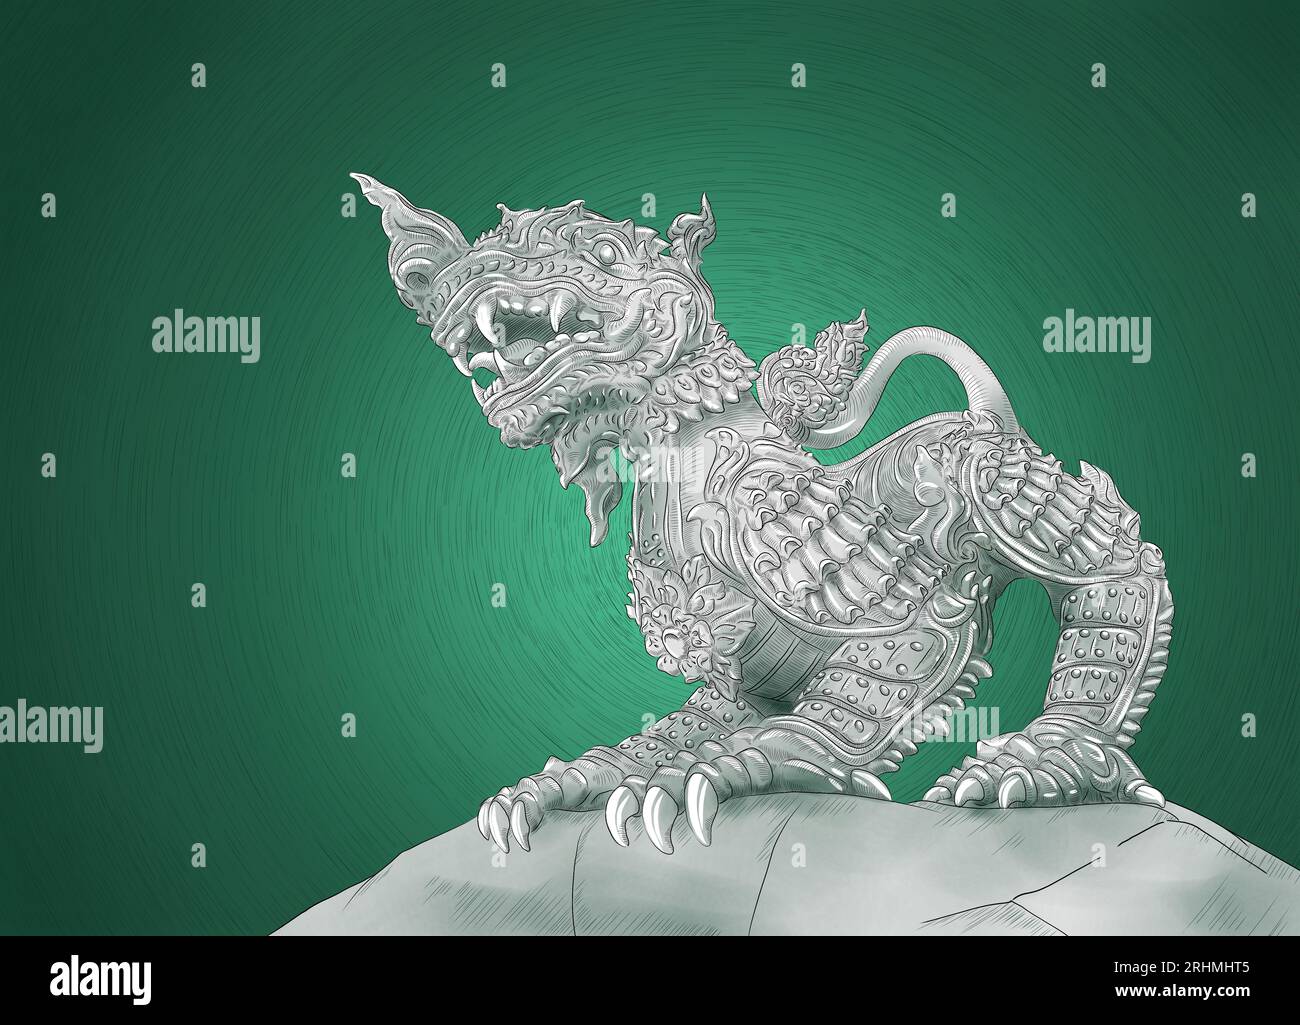 Dessins d'illustration de statues de lion dans le style chinois mélangé thaïlandais Banque D'Images